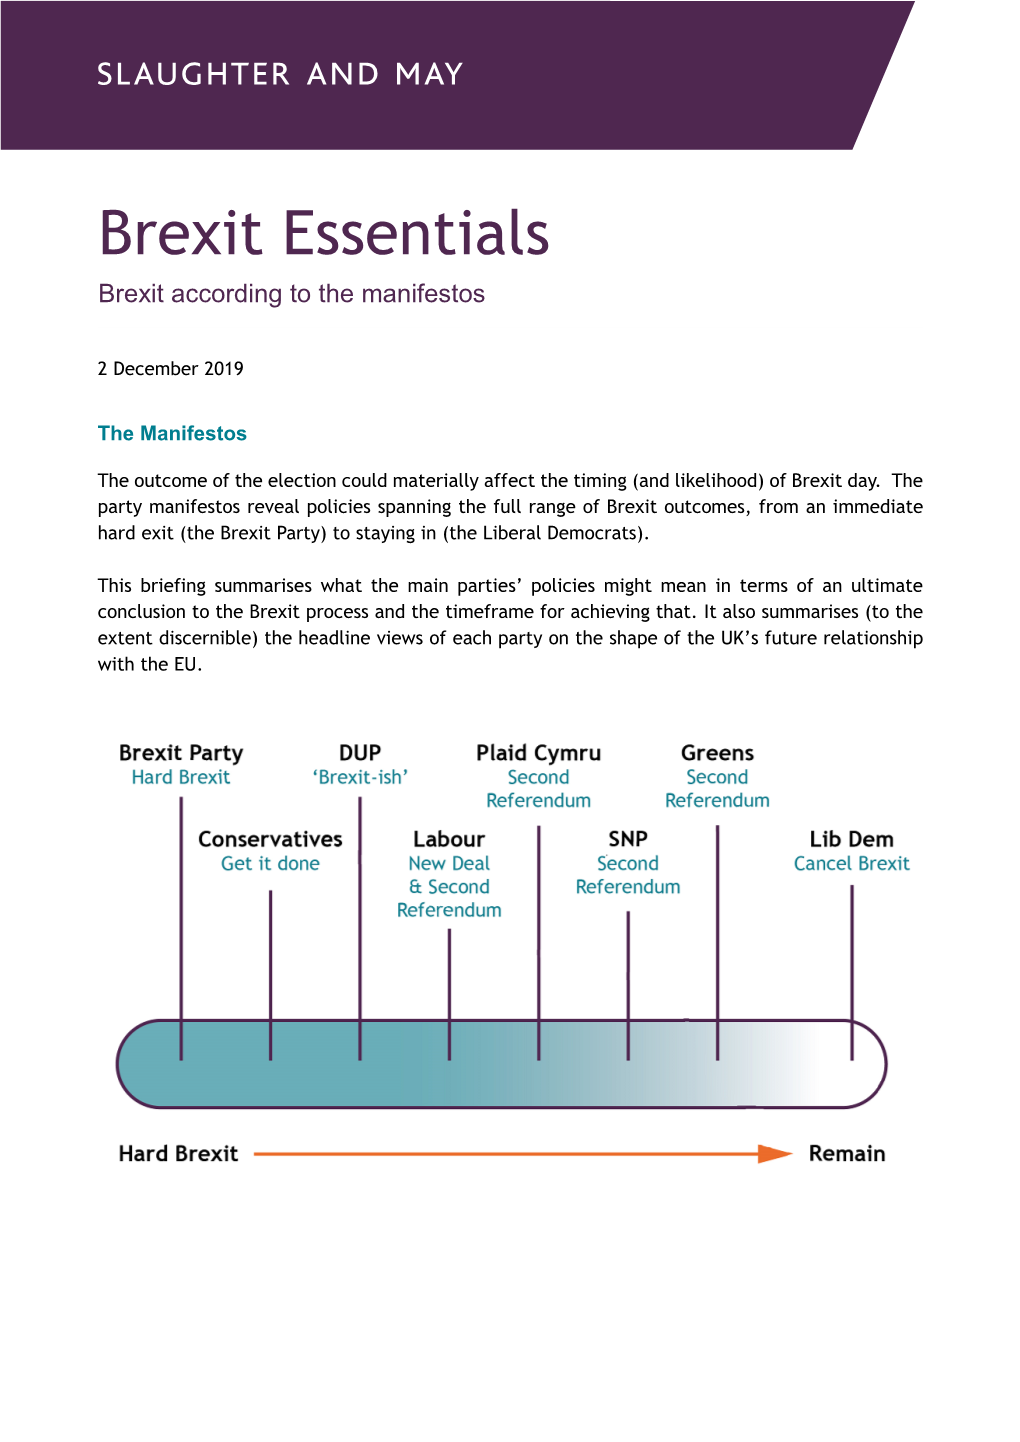 Brexit Essentials: Brexit According to the Manifestos